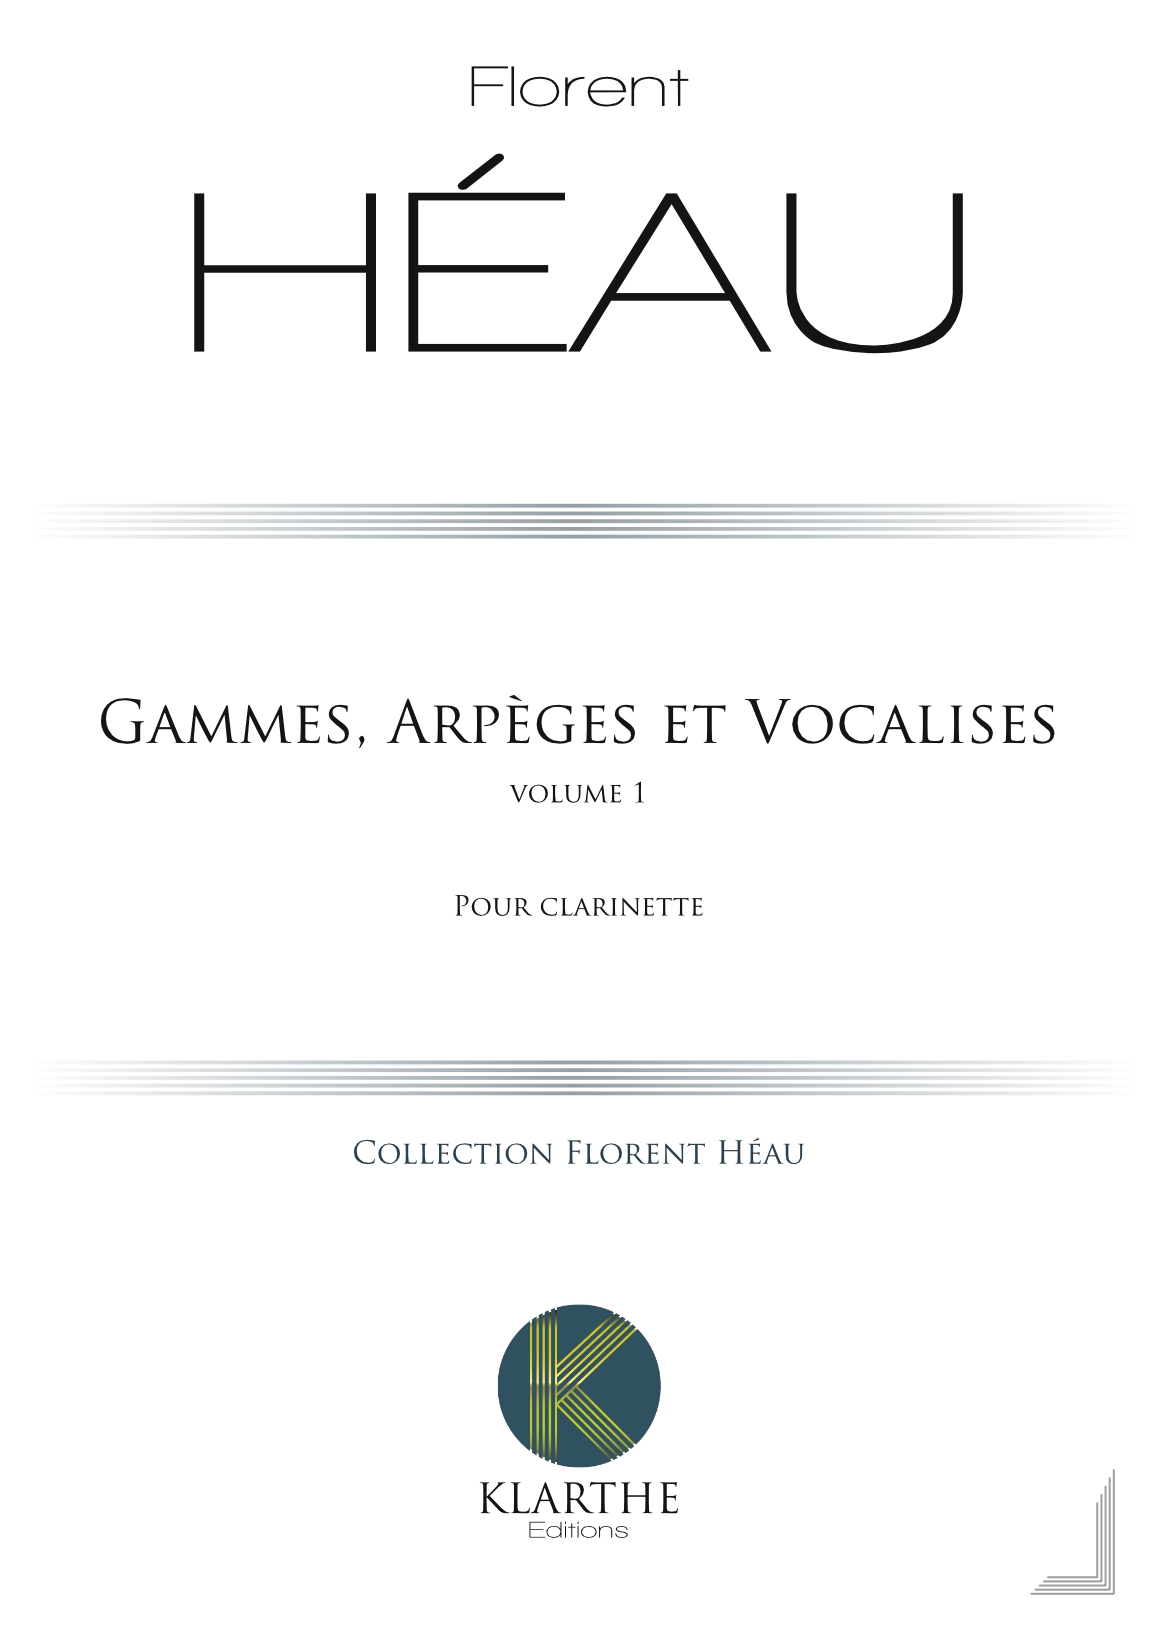 Gammes, Arpges et Vocalises Vol 1 (HEAU FLORENT)